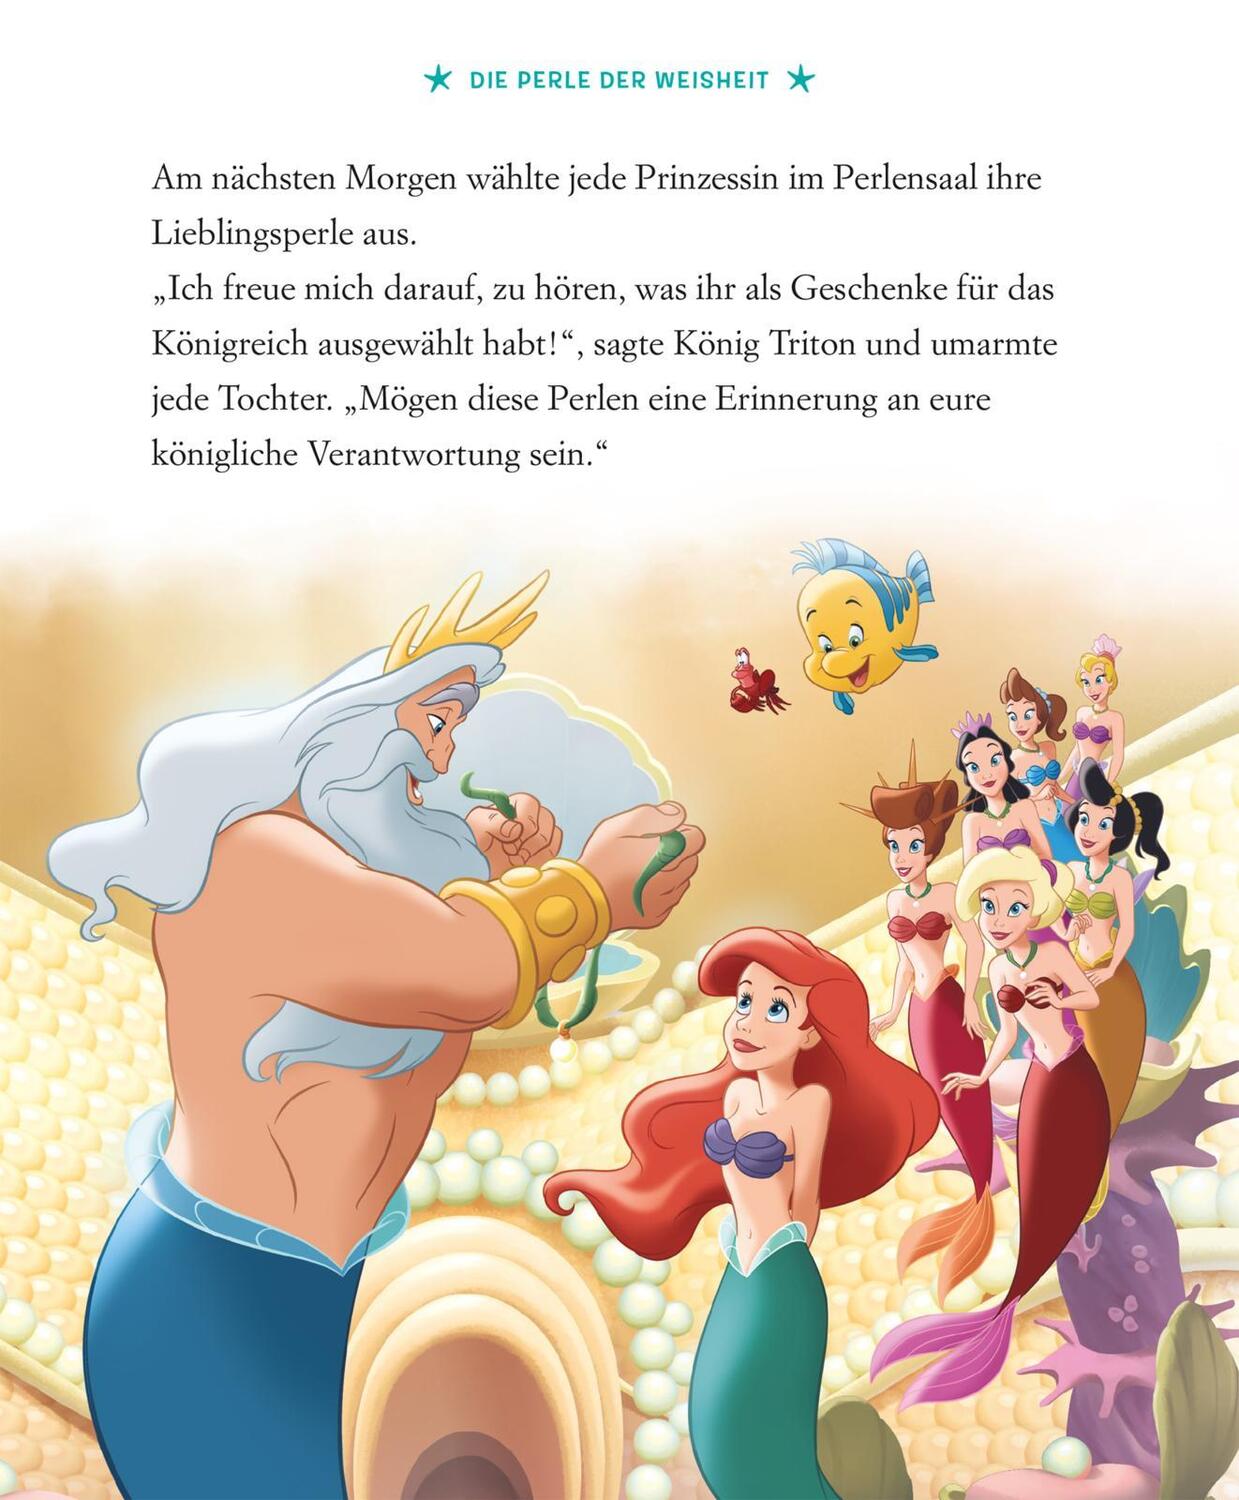 Bild: 9783845122236 | Disney: Die schönsten 5-Minuten-Geschichten: Im Meer | Buch | Deutsch